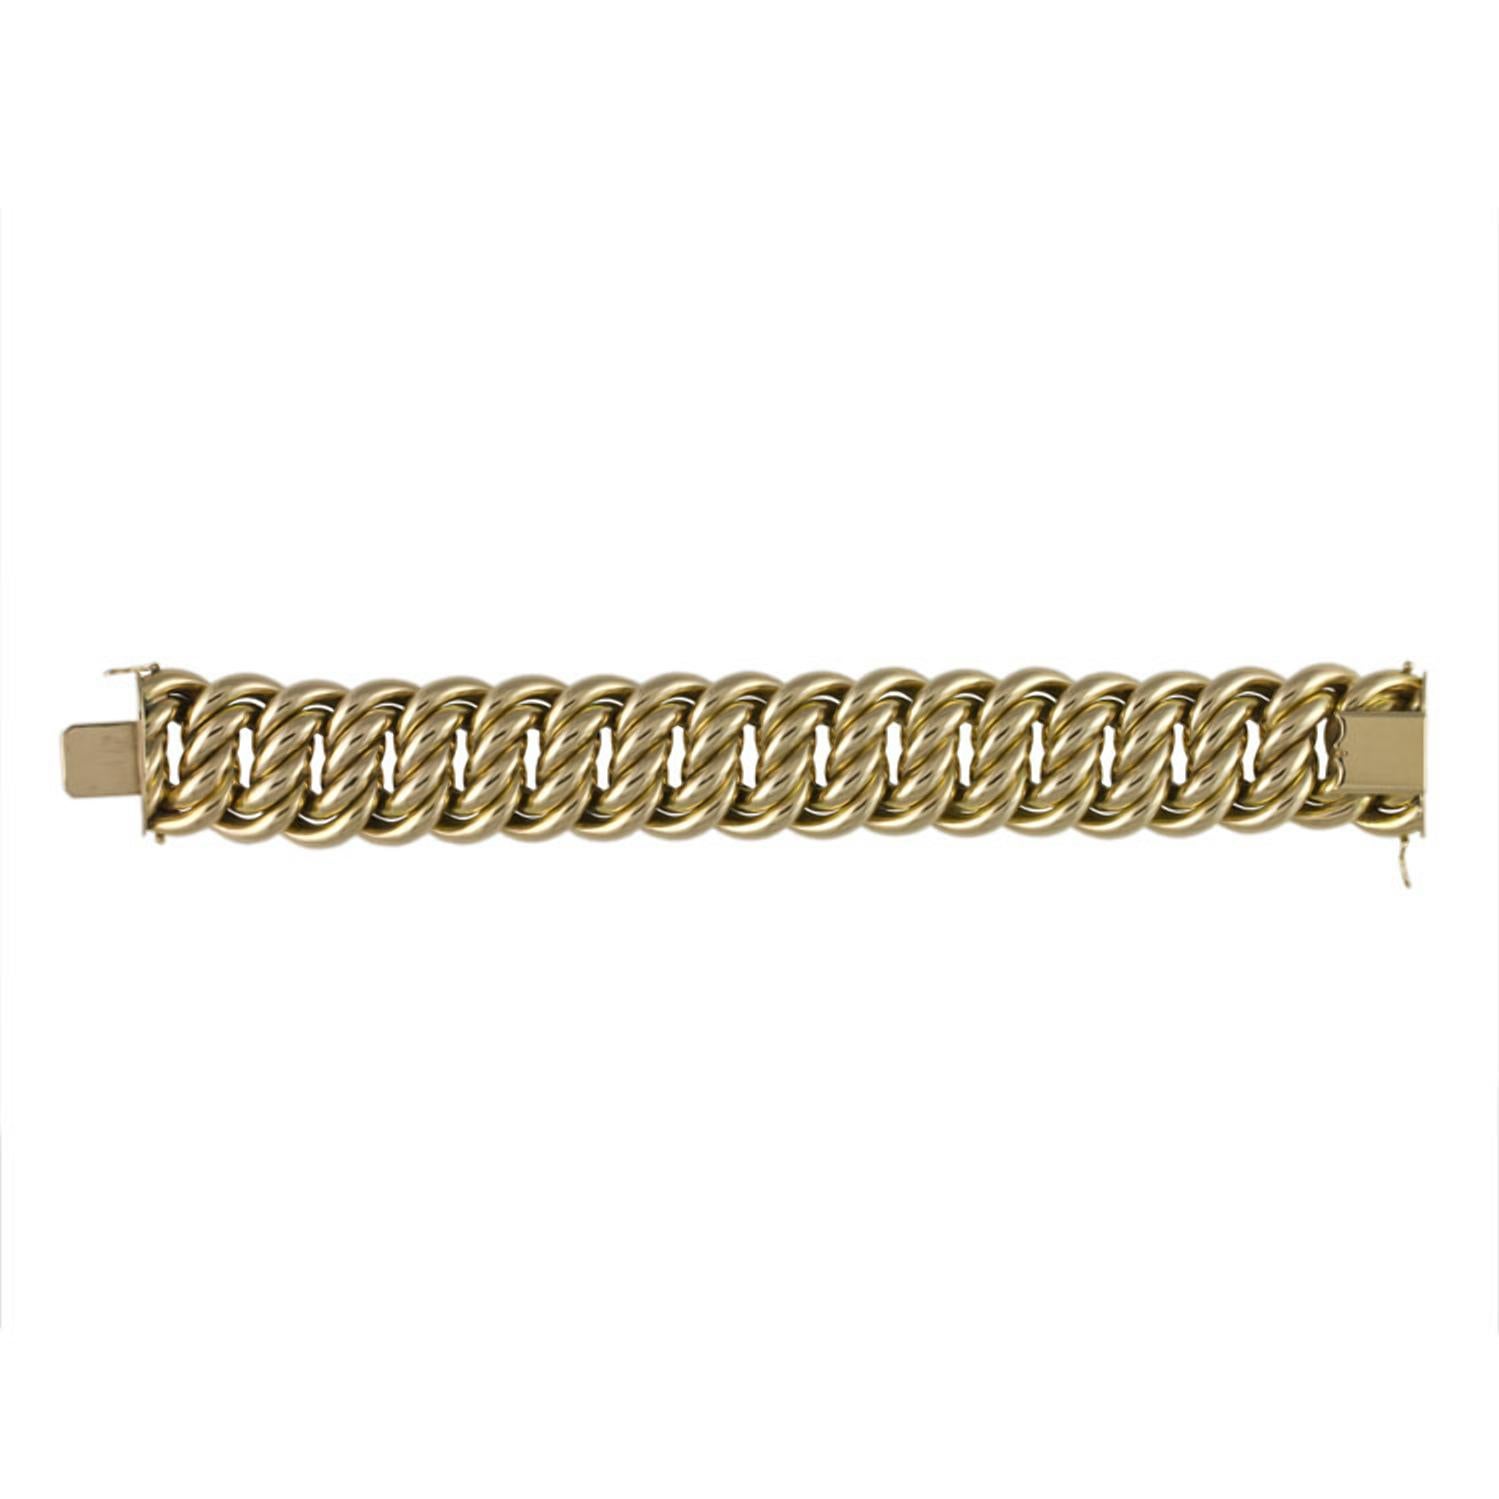 Un bracelet à maillons fantaisie en or jaune, les maillons s'emboîtant formant un motif stylisé en forme de huit avec un fermoir en forme de boîte, deux loquets de sécurité en forme de huit, portant les marques de l'or domestique français sur la